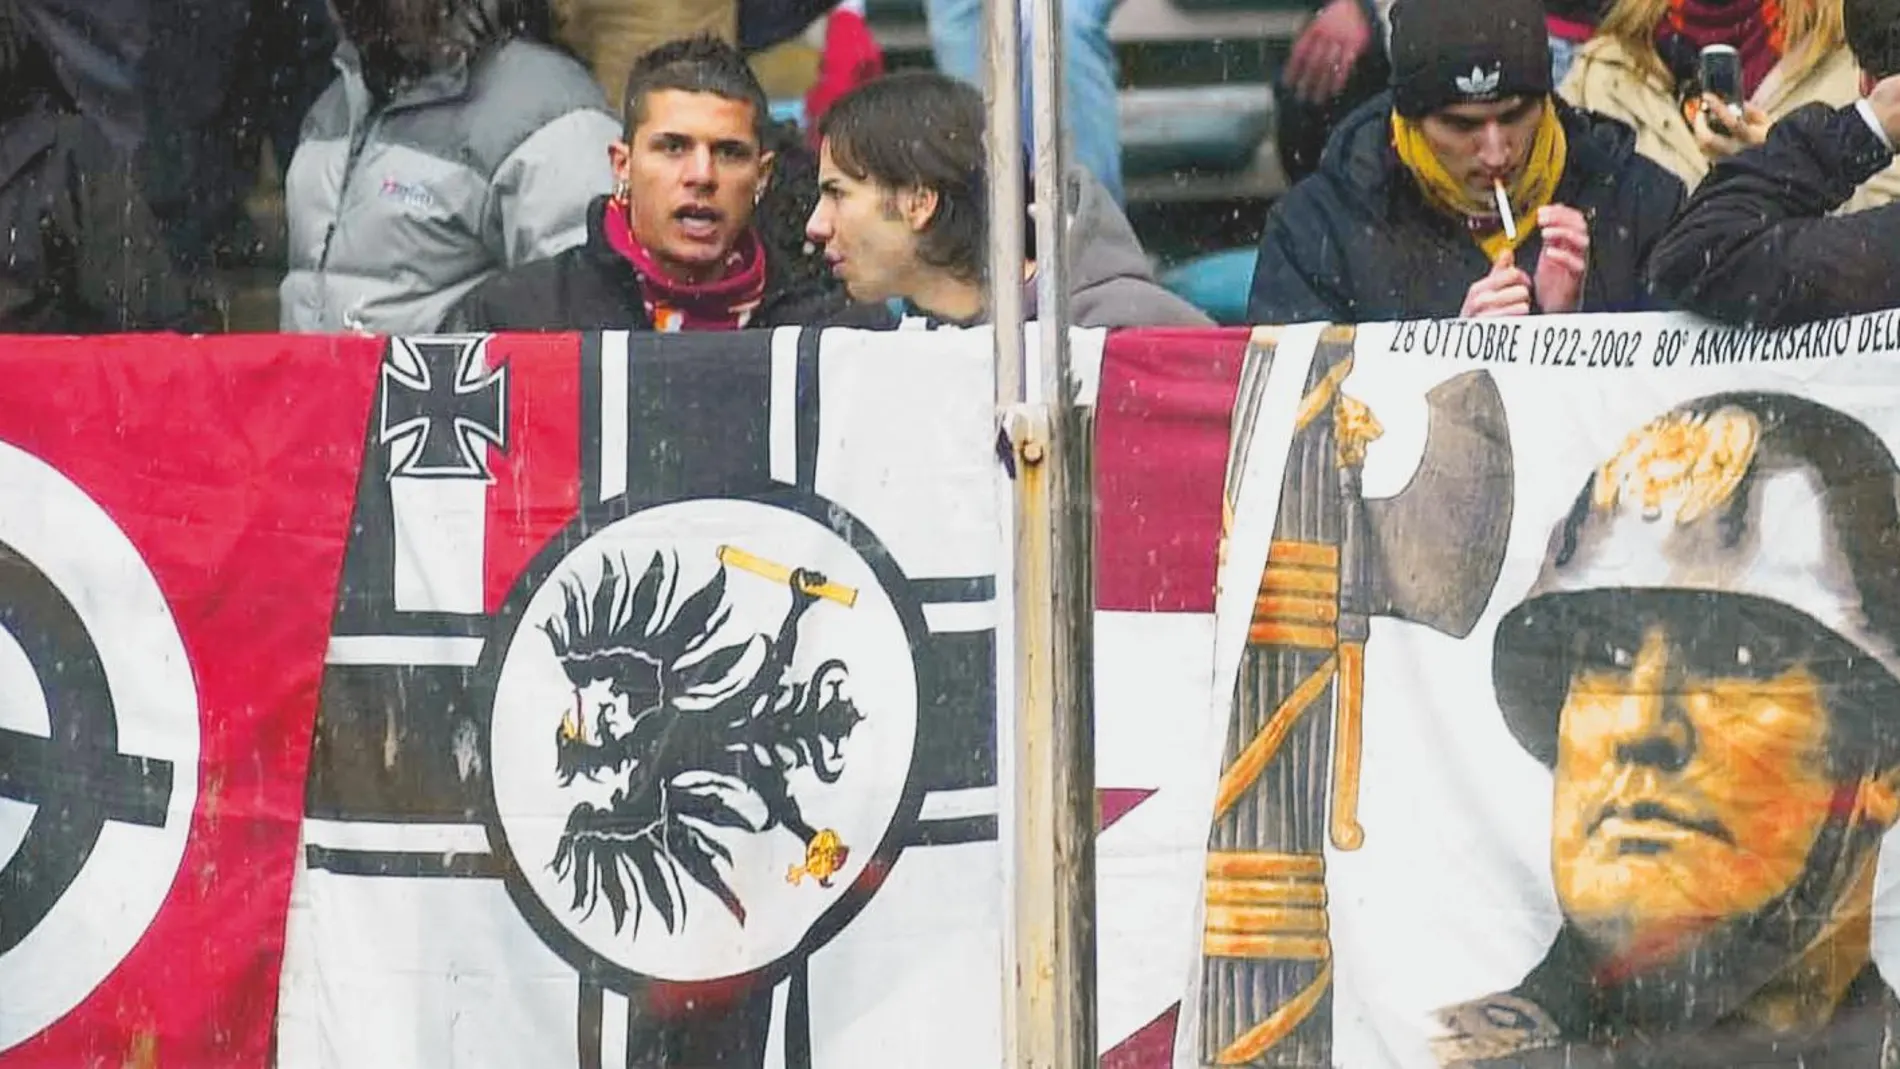 Aficionados despliegan pancartas con símbolos fascistas y neonazis durante un partido de fútbol en Roma